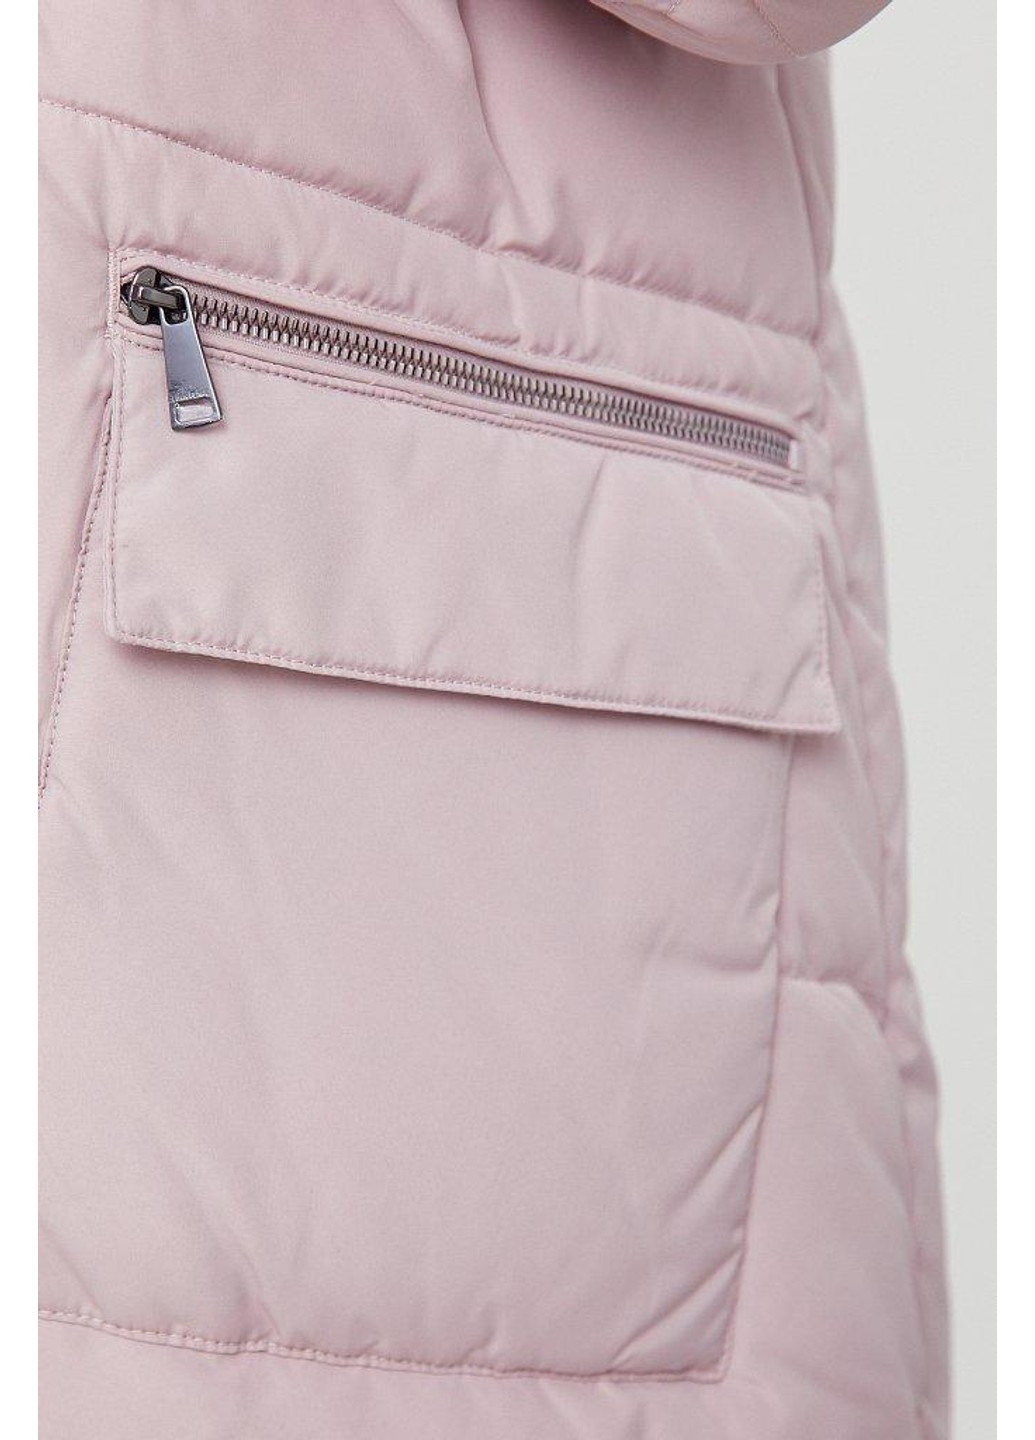 Розовая зимняя зимняя куртка w20-32000-812 Finn Flare